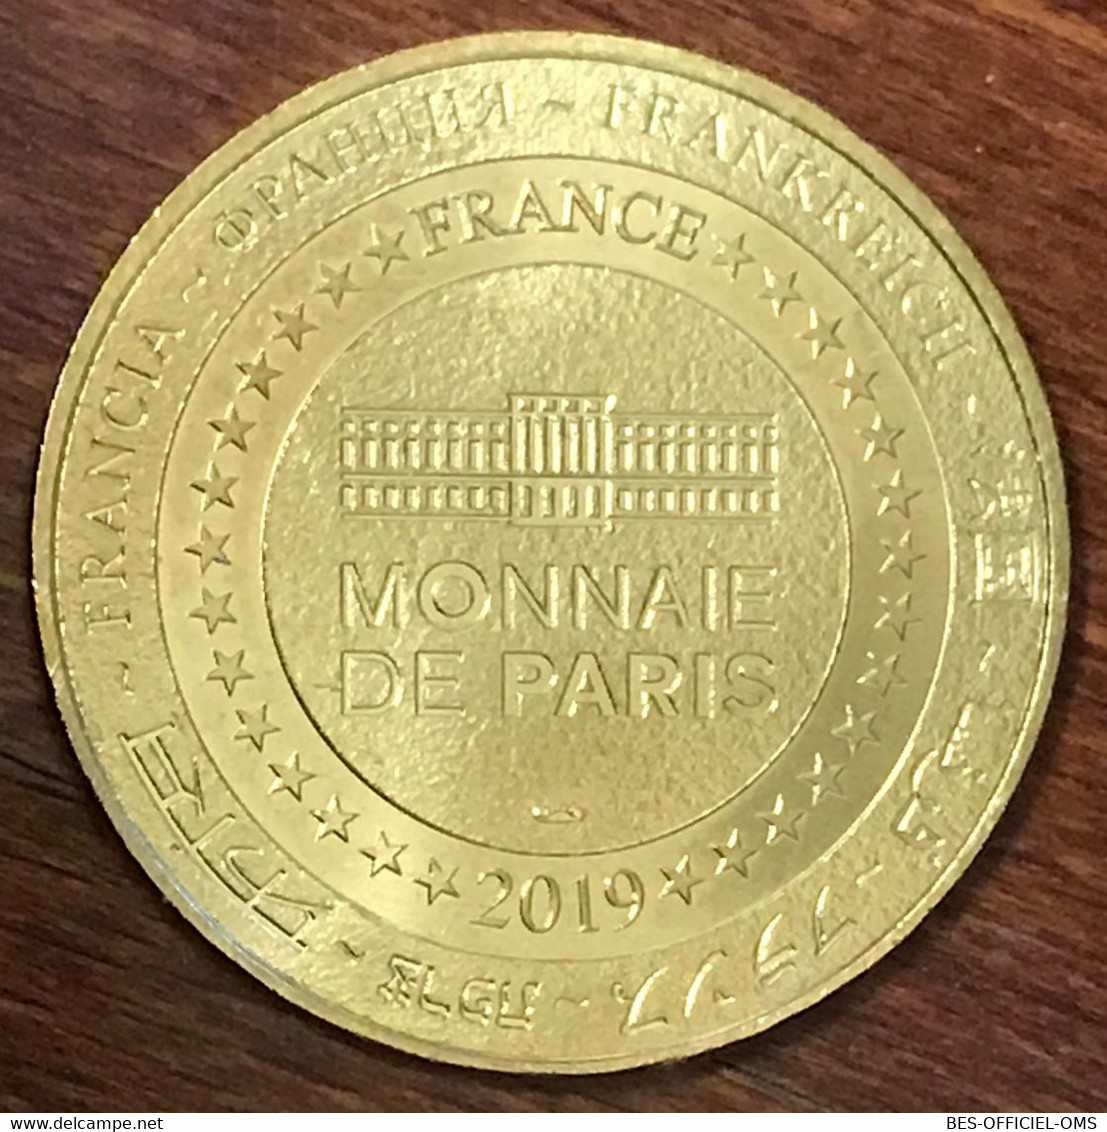 36 CHÂTEAU DE VALENÇAY MDP 2019 MINI MÉDAILLE SOUVENIR MONNAIE DE PARIS JETON TOURISTIQUE TOKENS MEDALS COINS - 2019